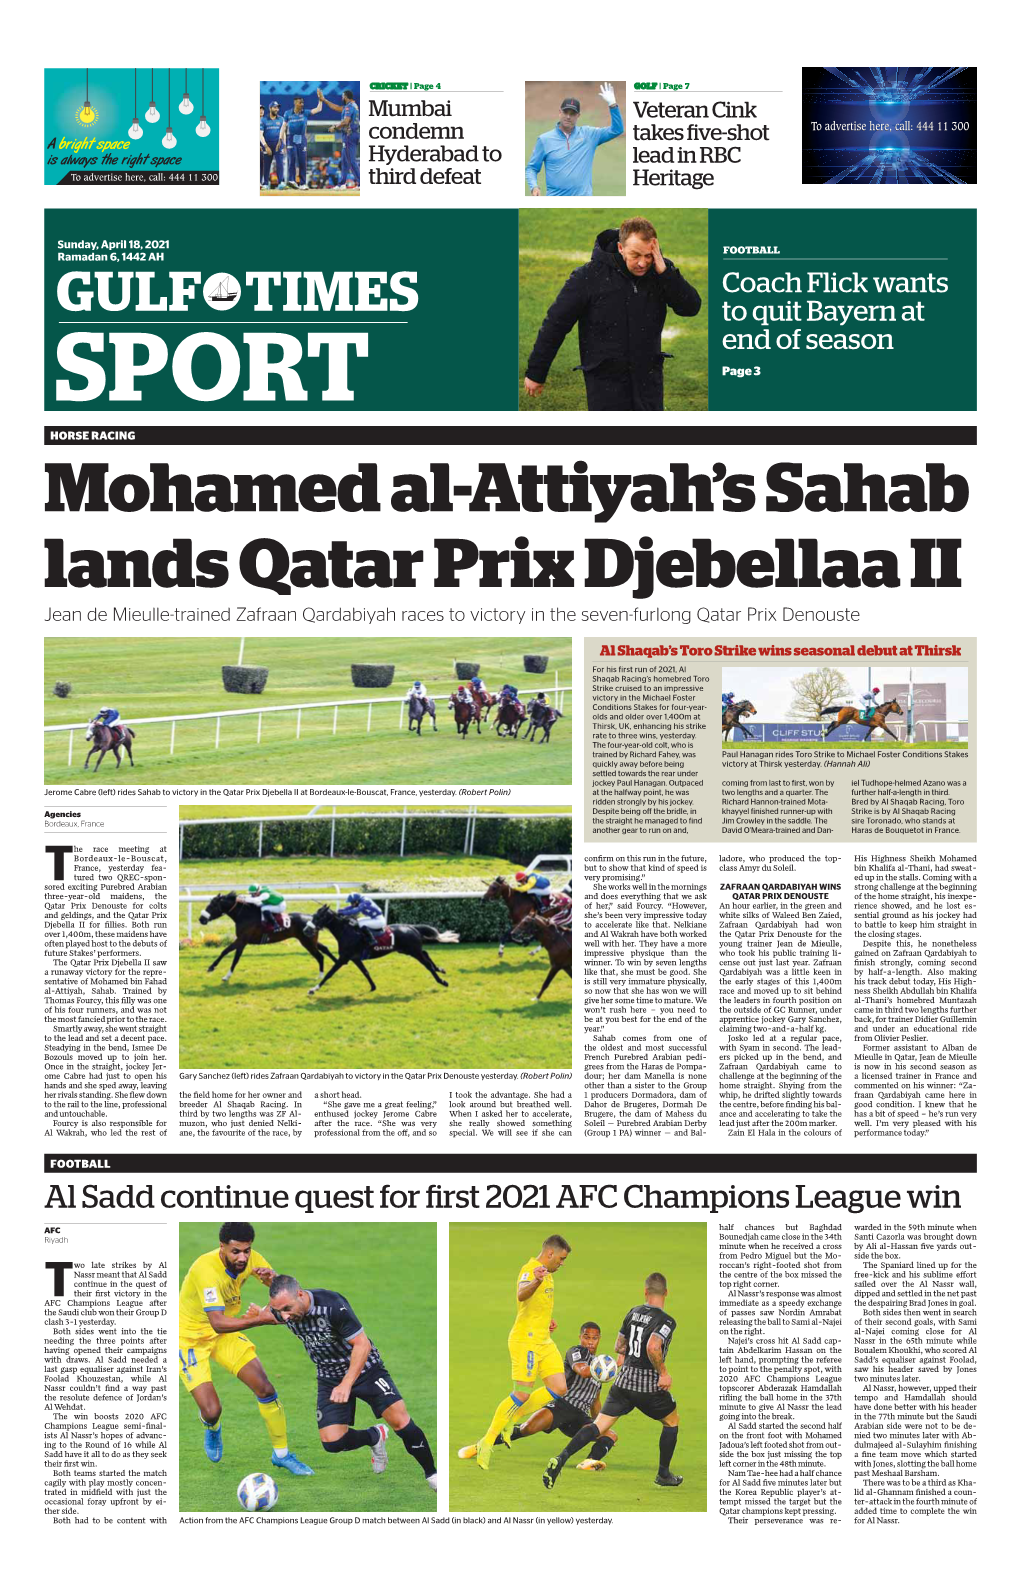 Mohamed Al-Attiyah's Sahab Lands Qatar Prix Djebellaa II